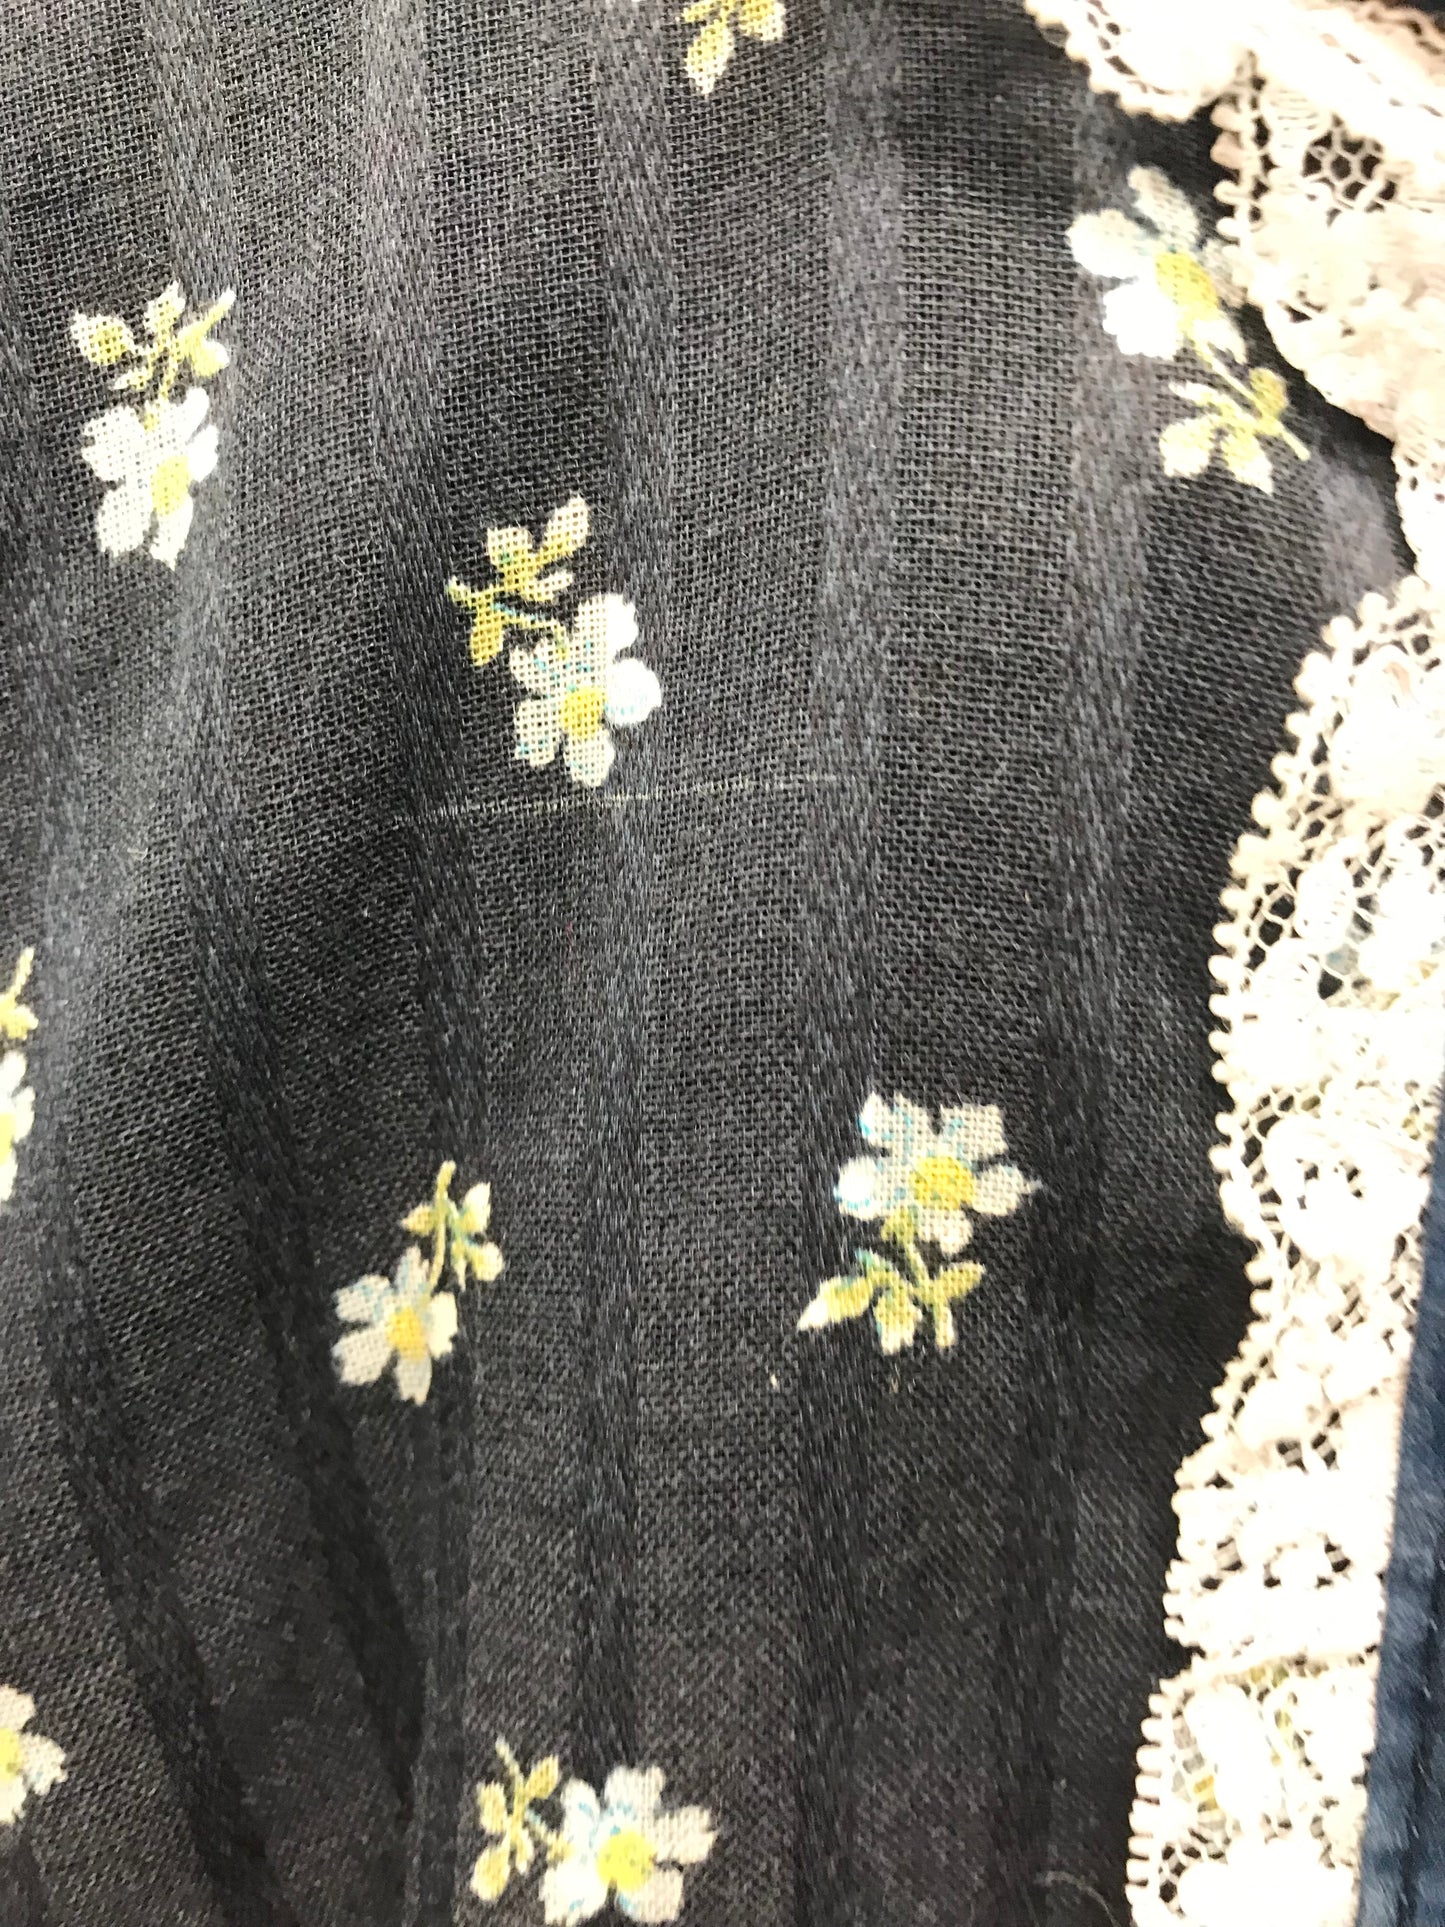 ’70s Vintage Flower Dress [A26068]